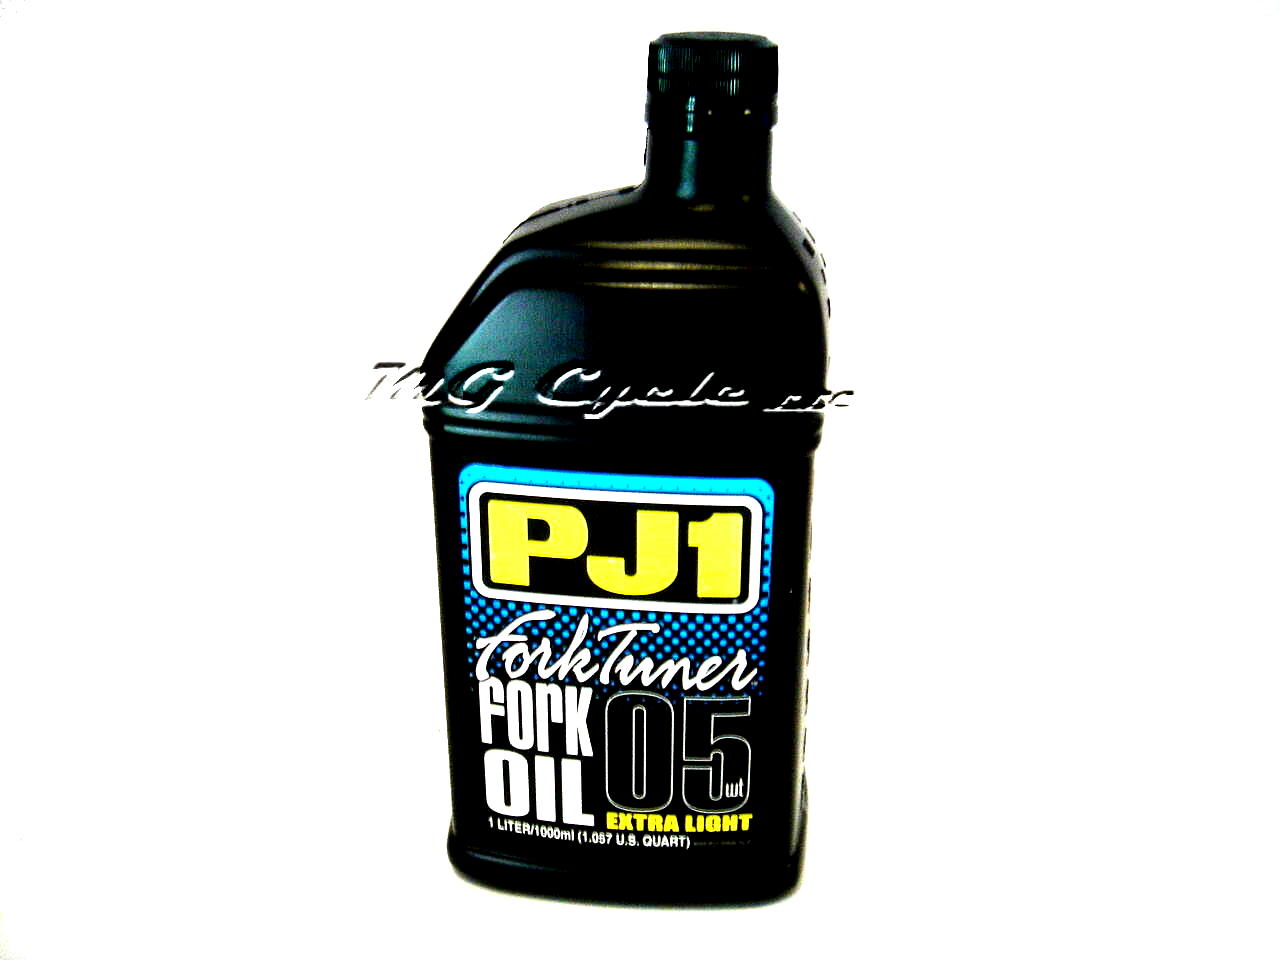 PJ1 Fork Tuner fork oil 5W extra light, 1 liter bottle - Click Image to Close